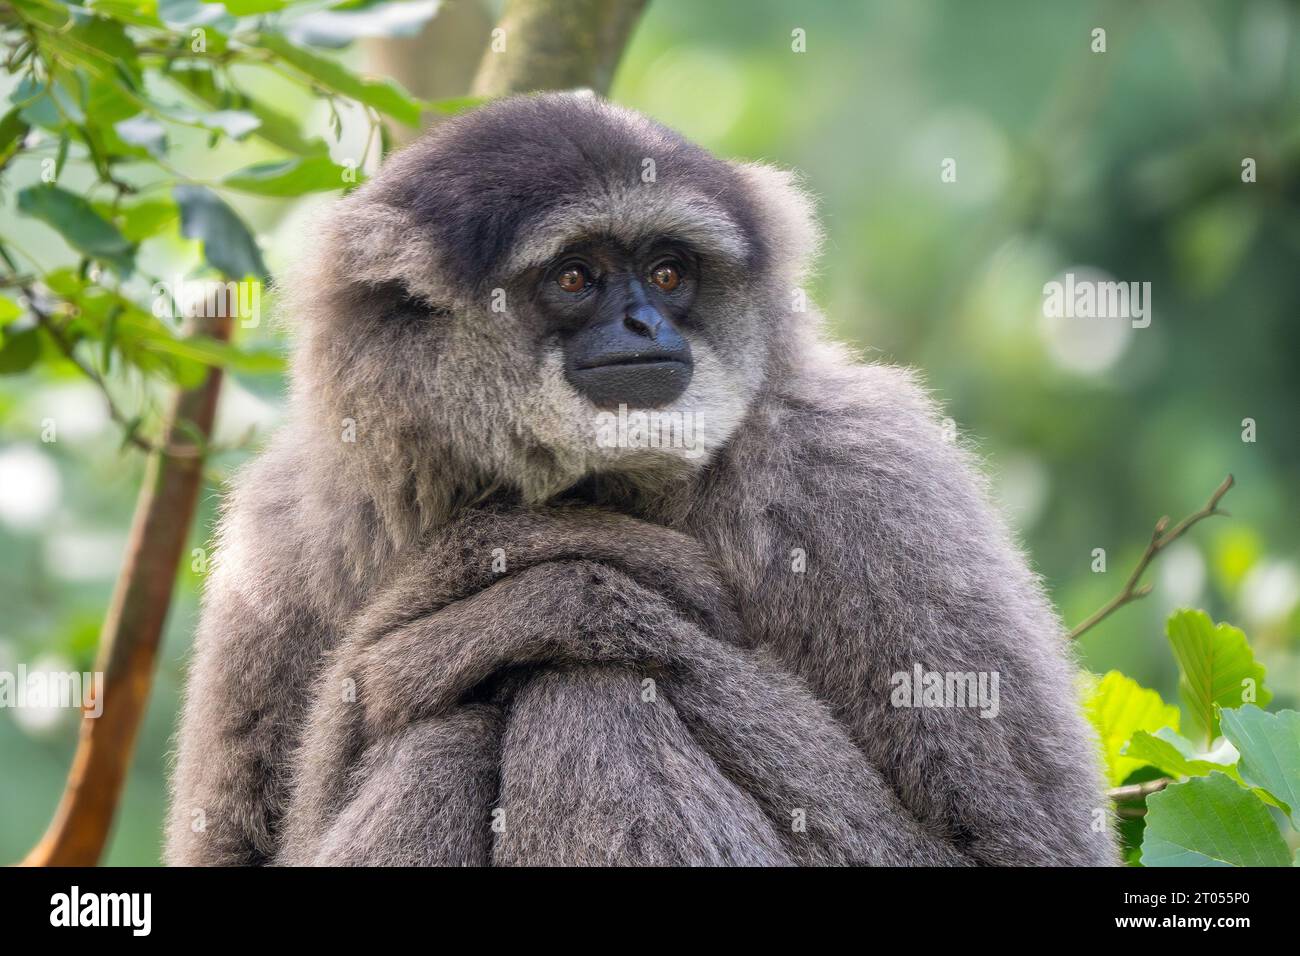 Gibbon plateado - Hylobates moloch, retrato de primates hermosos endémicos en los bosques de Java, Indonesia. Foto de stock